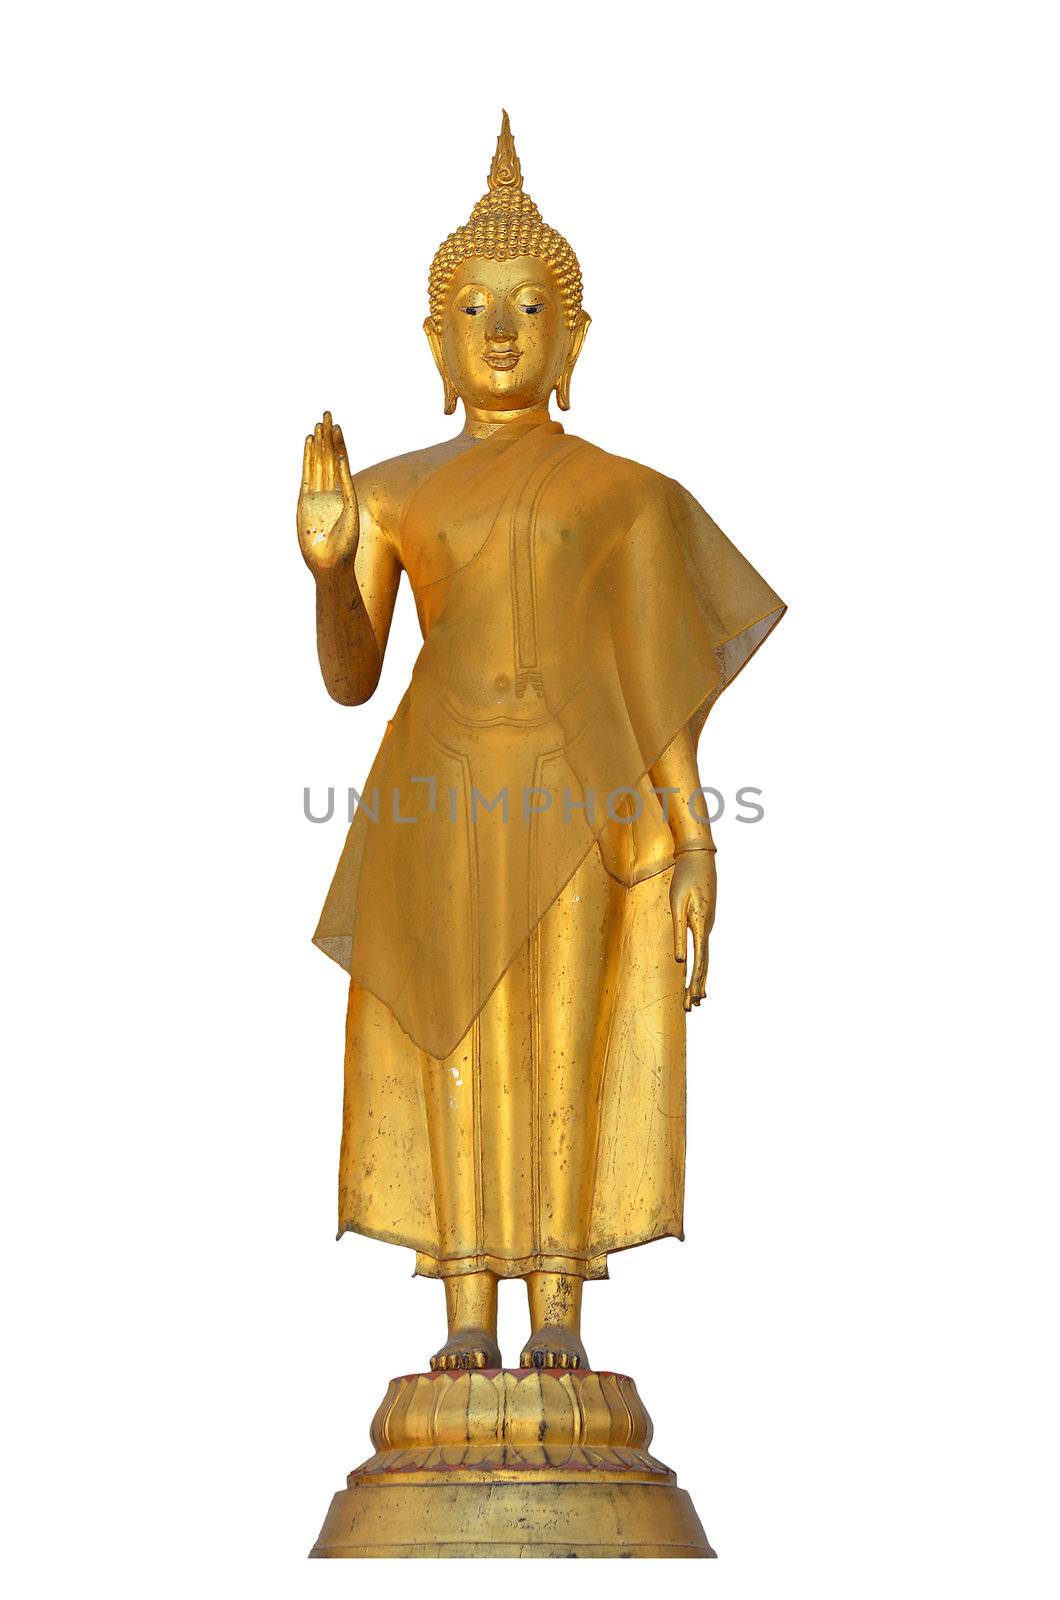 Buddha sculpture at Bangkok Temple Thailand by Falara